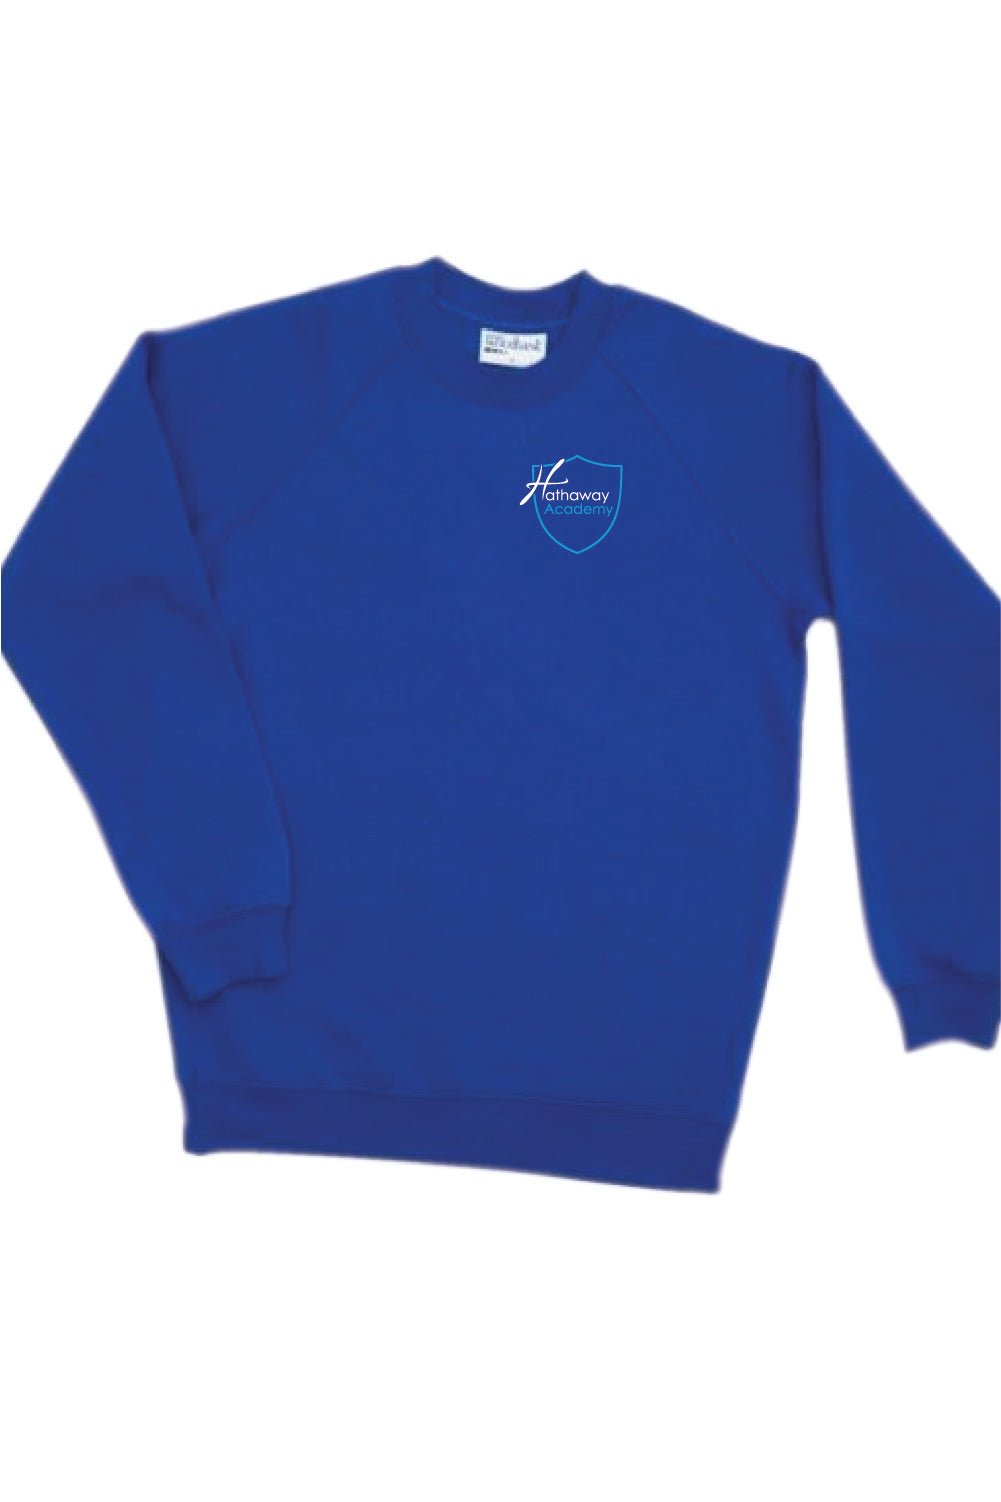 Hathaway Academy PE Sweatshirt - Uniformwise Schoolwear